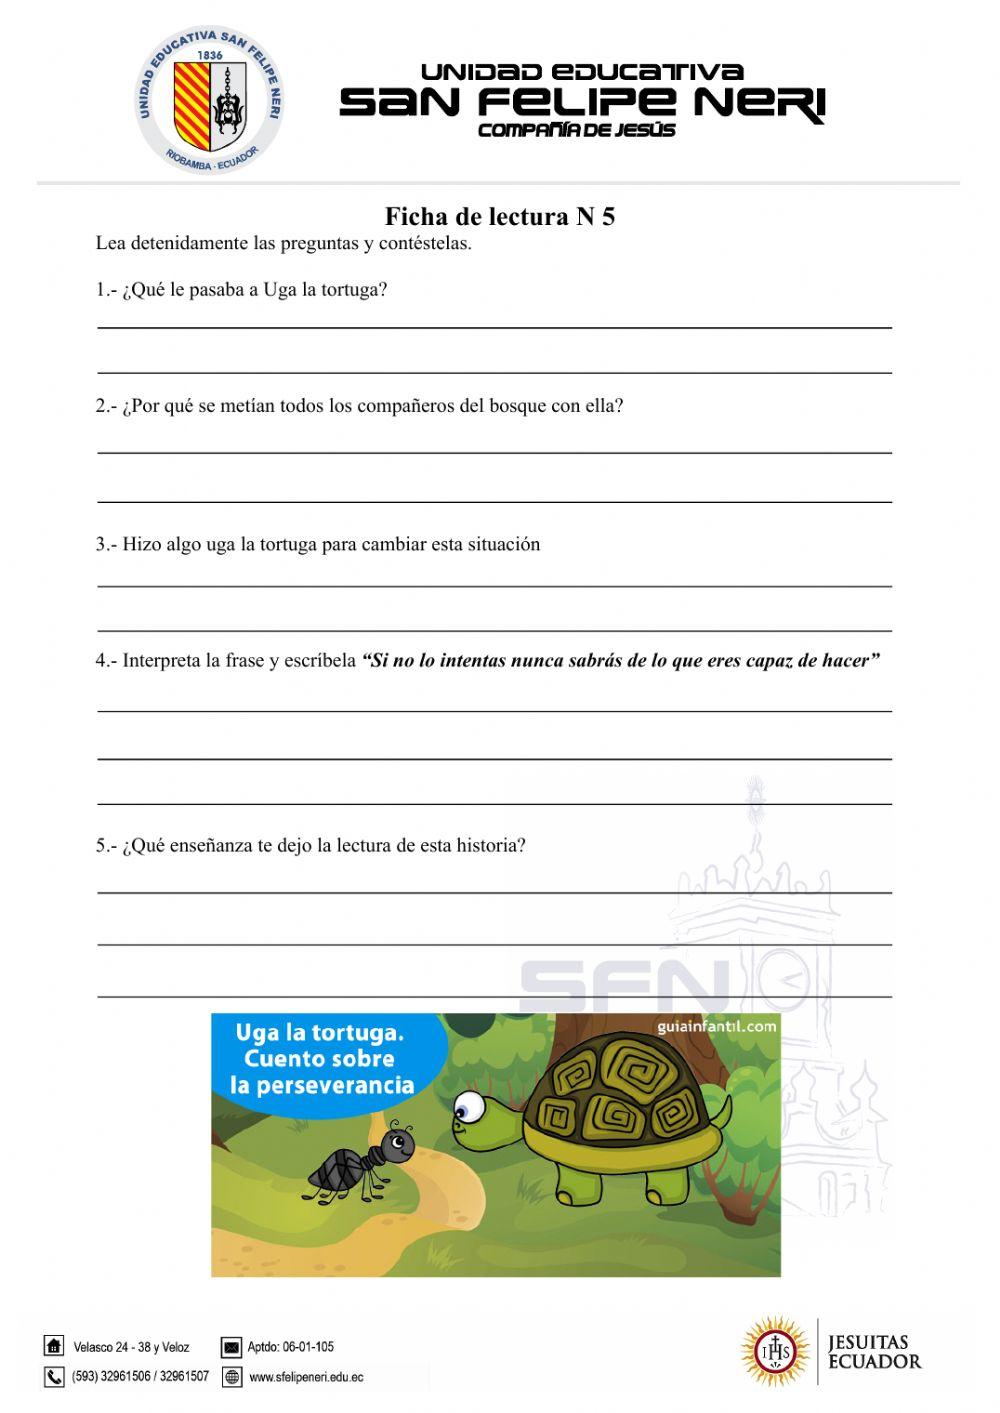 Ficha de lectura numero 5 Uga la tortuga